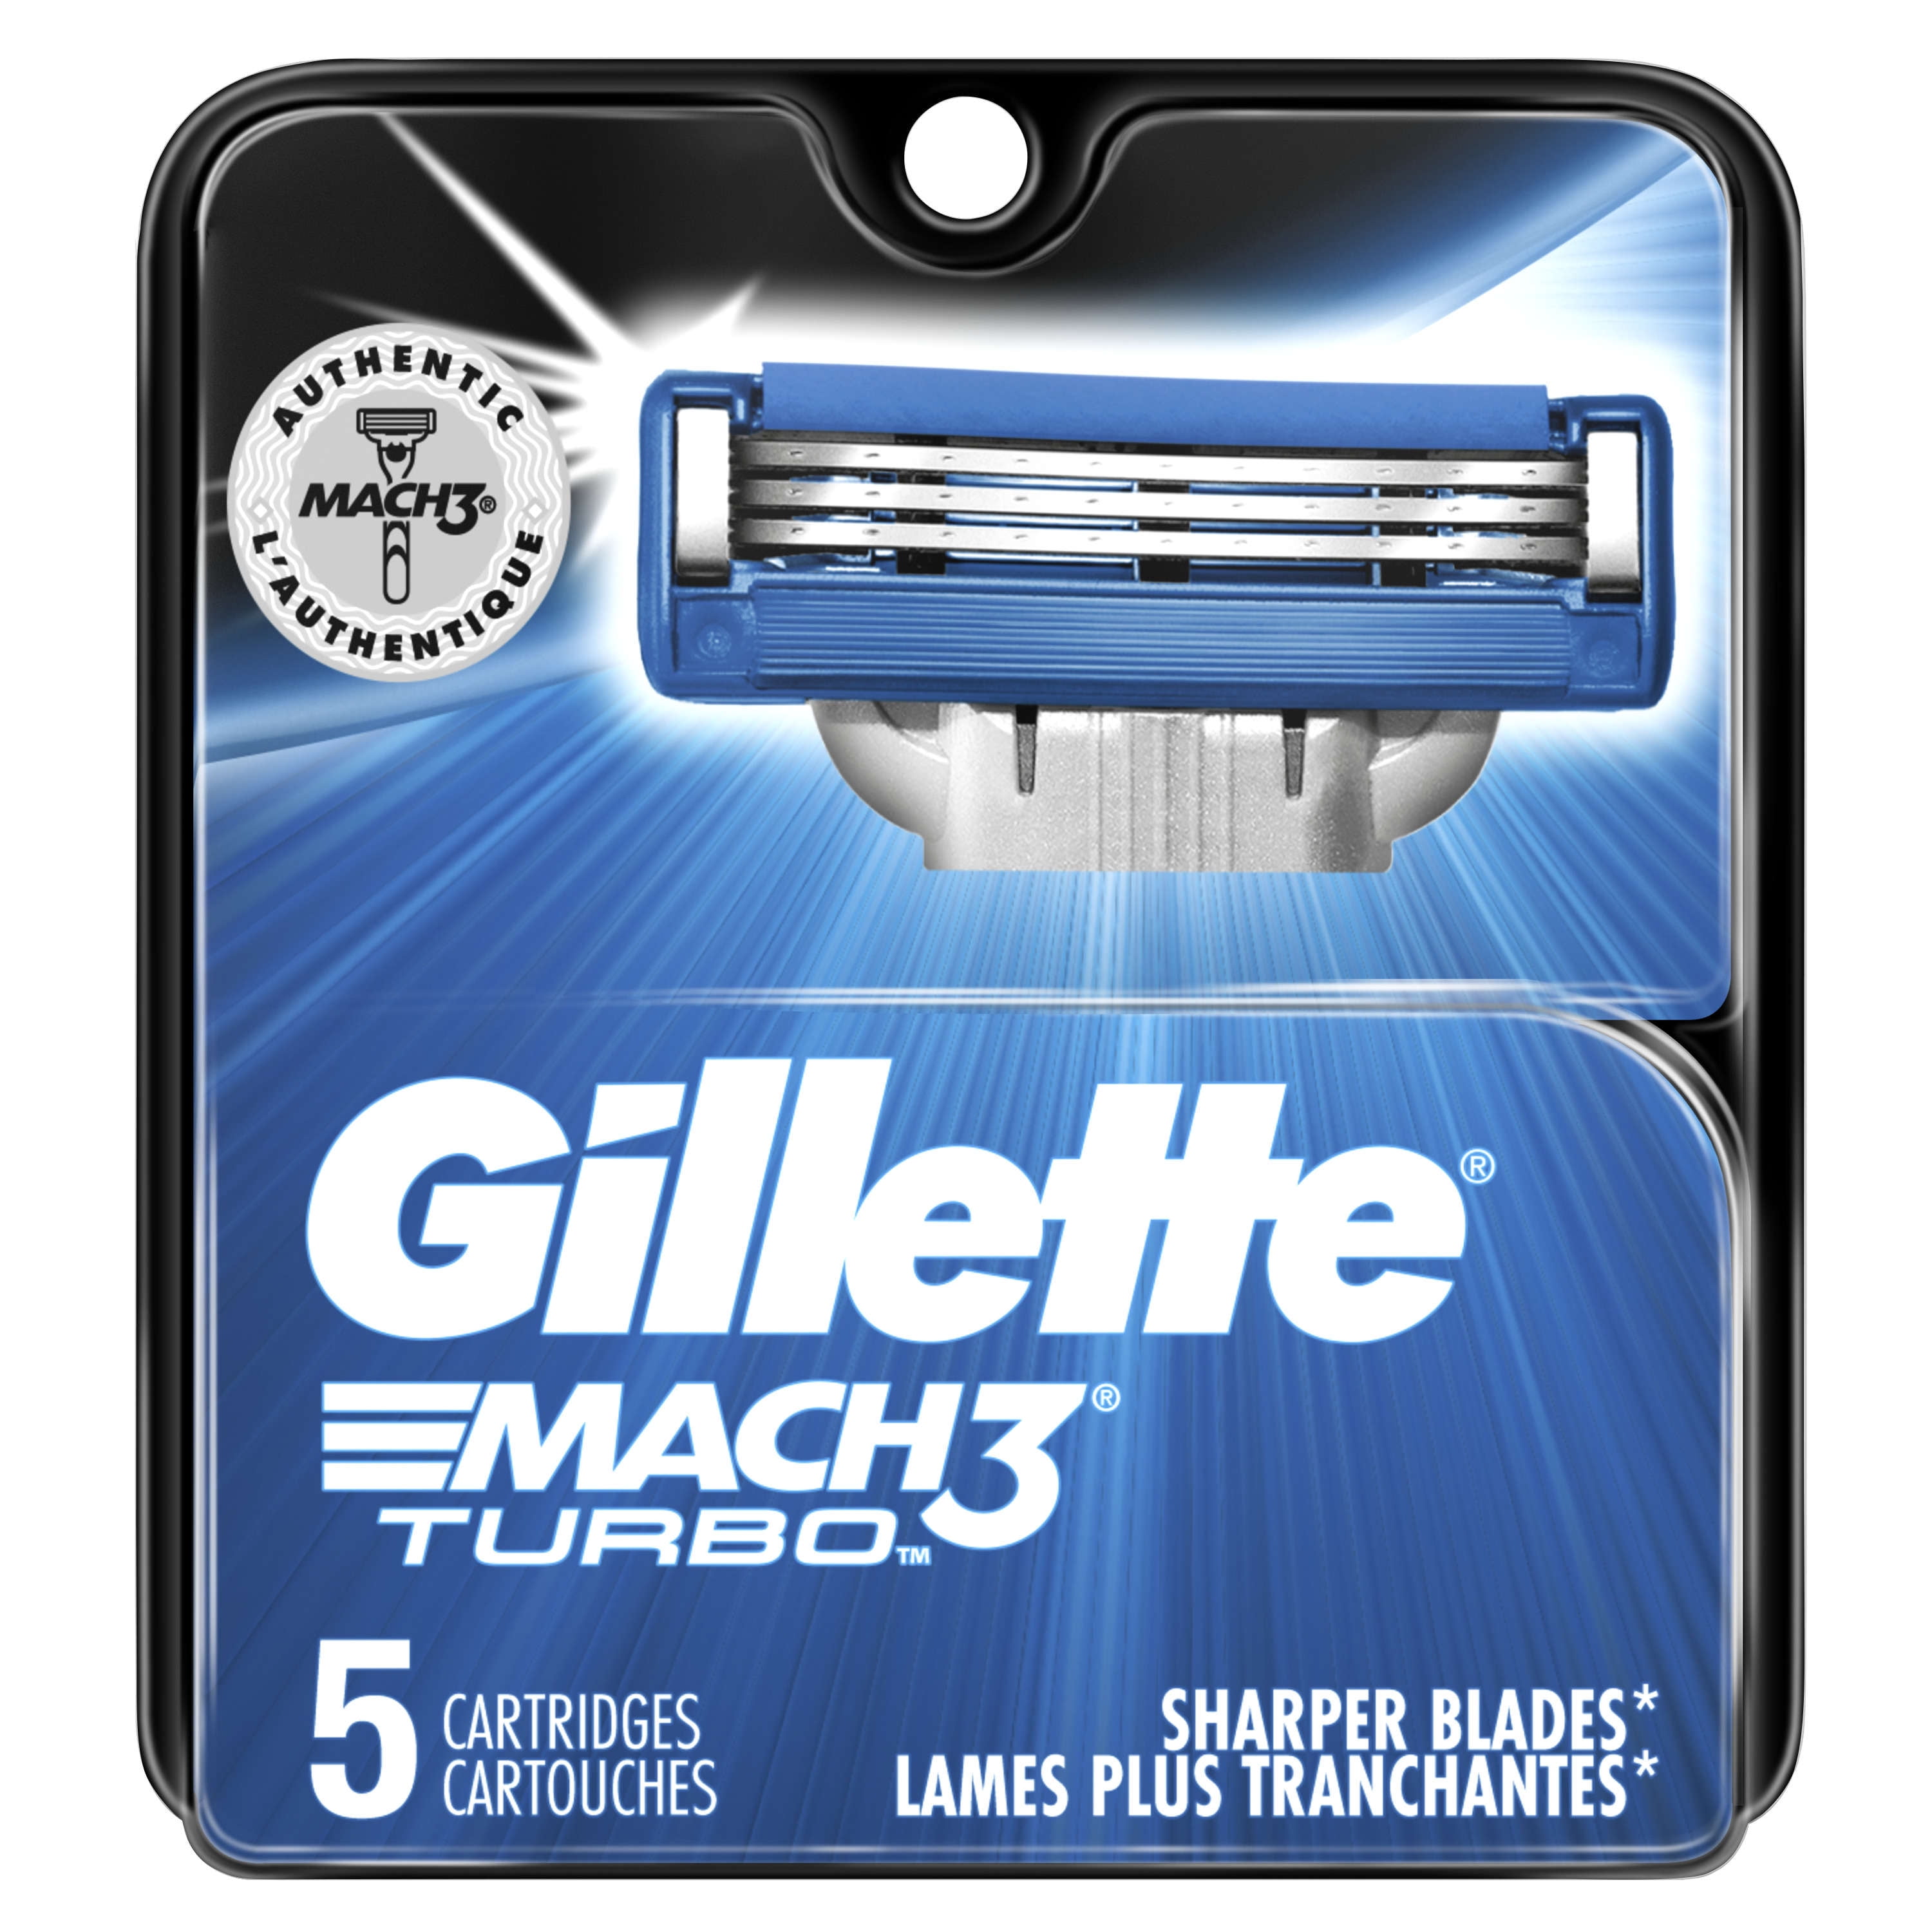 Buy Gillette Mach 3+ Razor 2 Up Online at Chemist Warehouse®